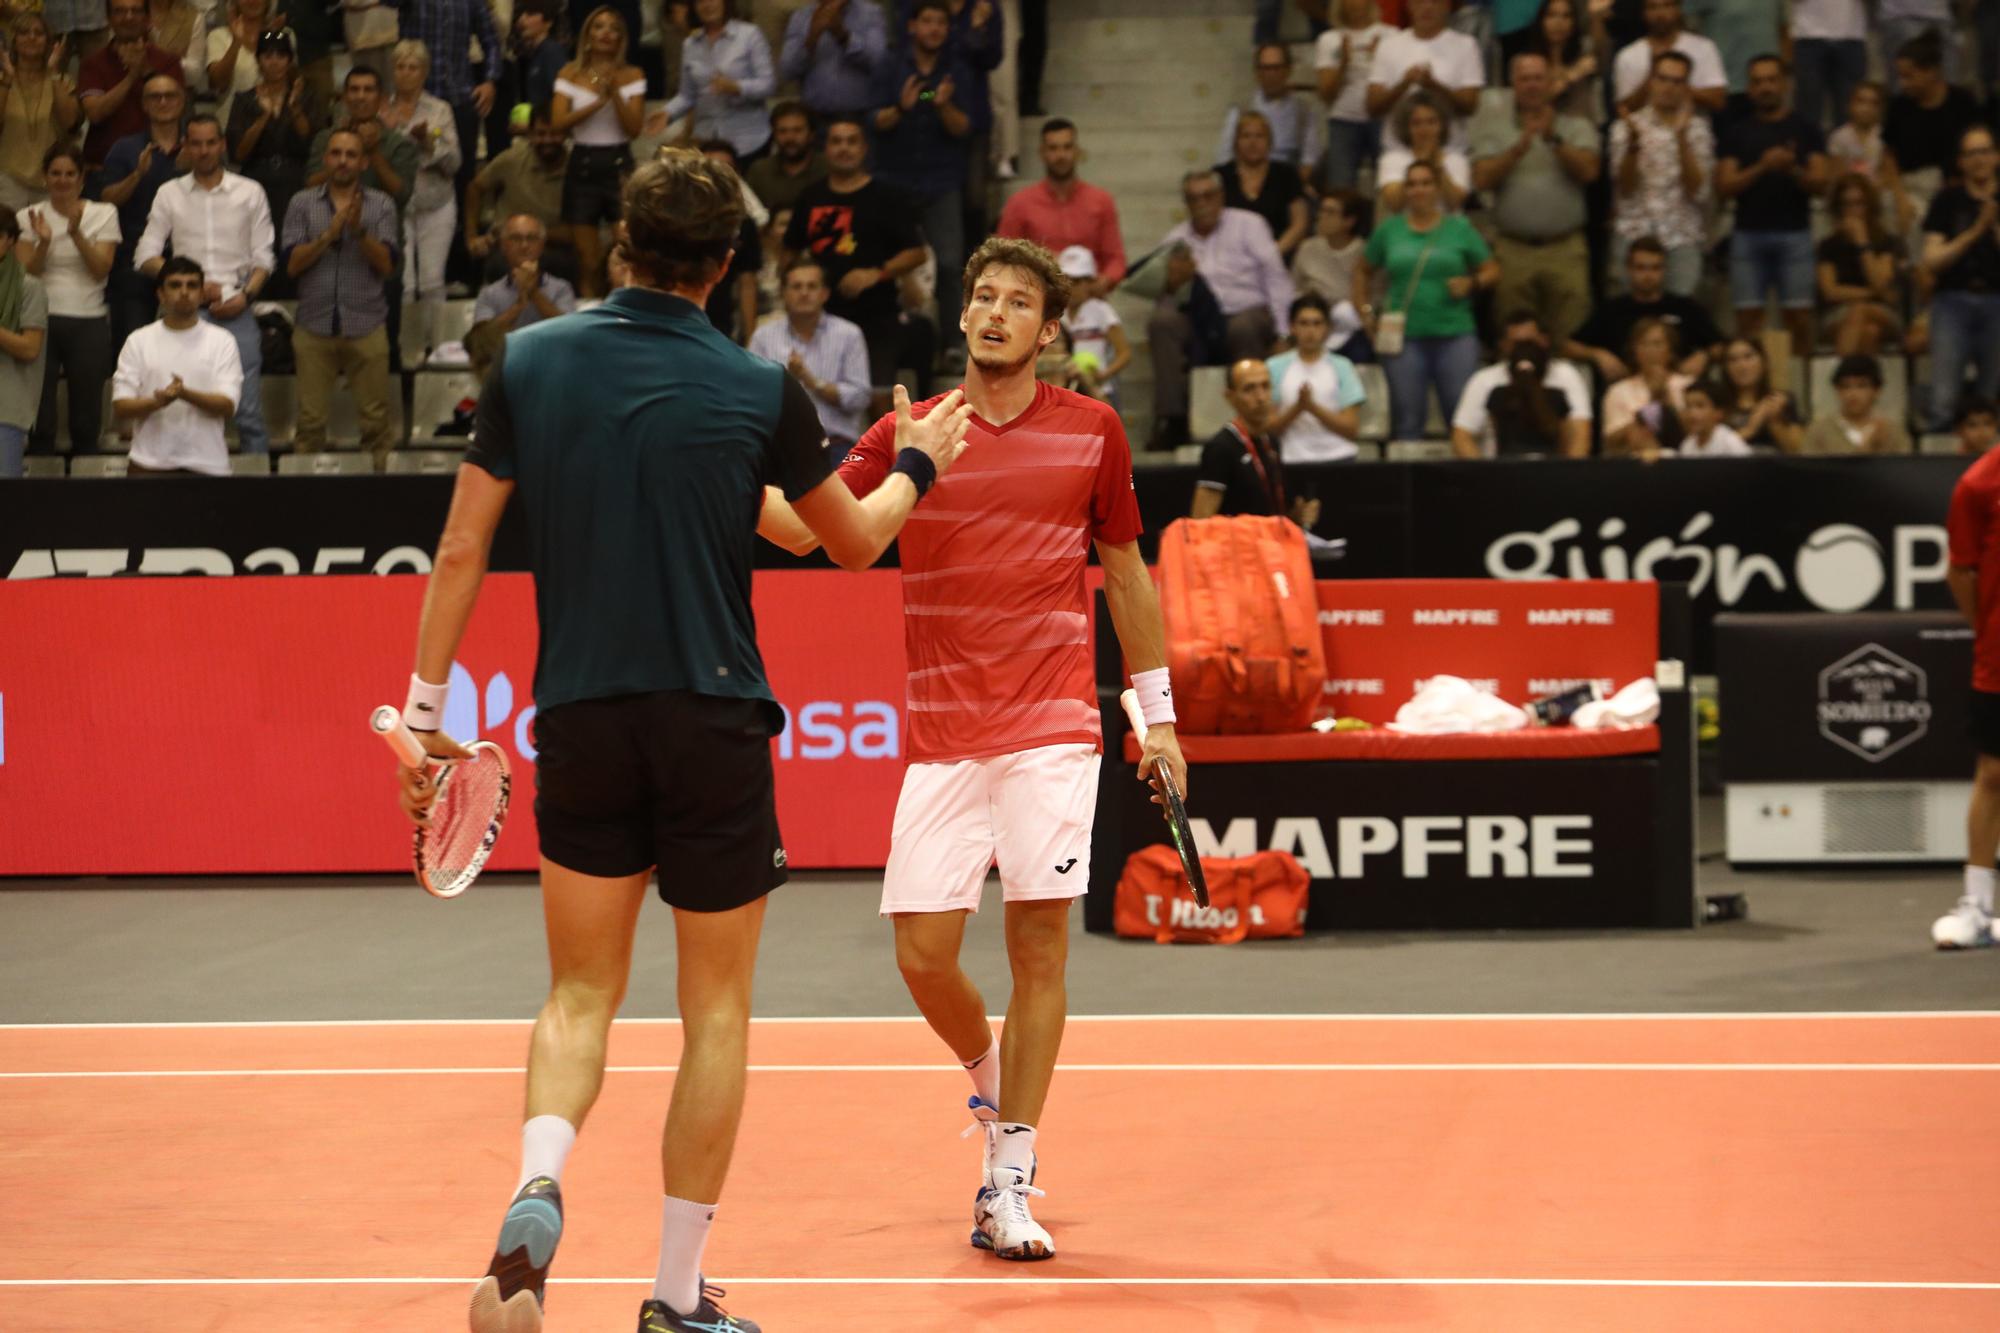 El partido entre Pablo Carreño y Arthur Rinderknech en el Gijón Open